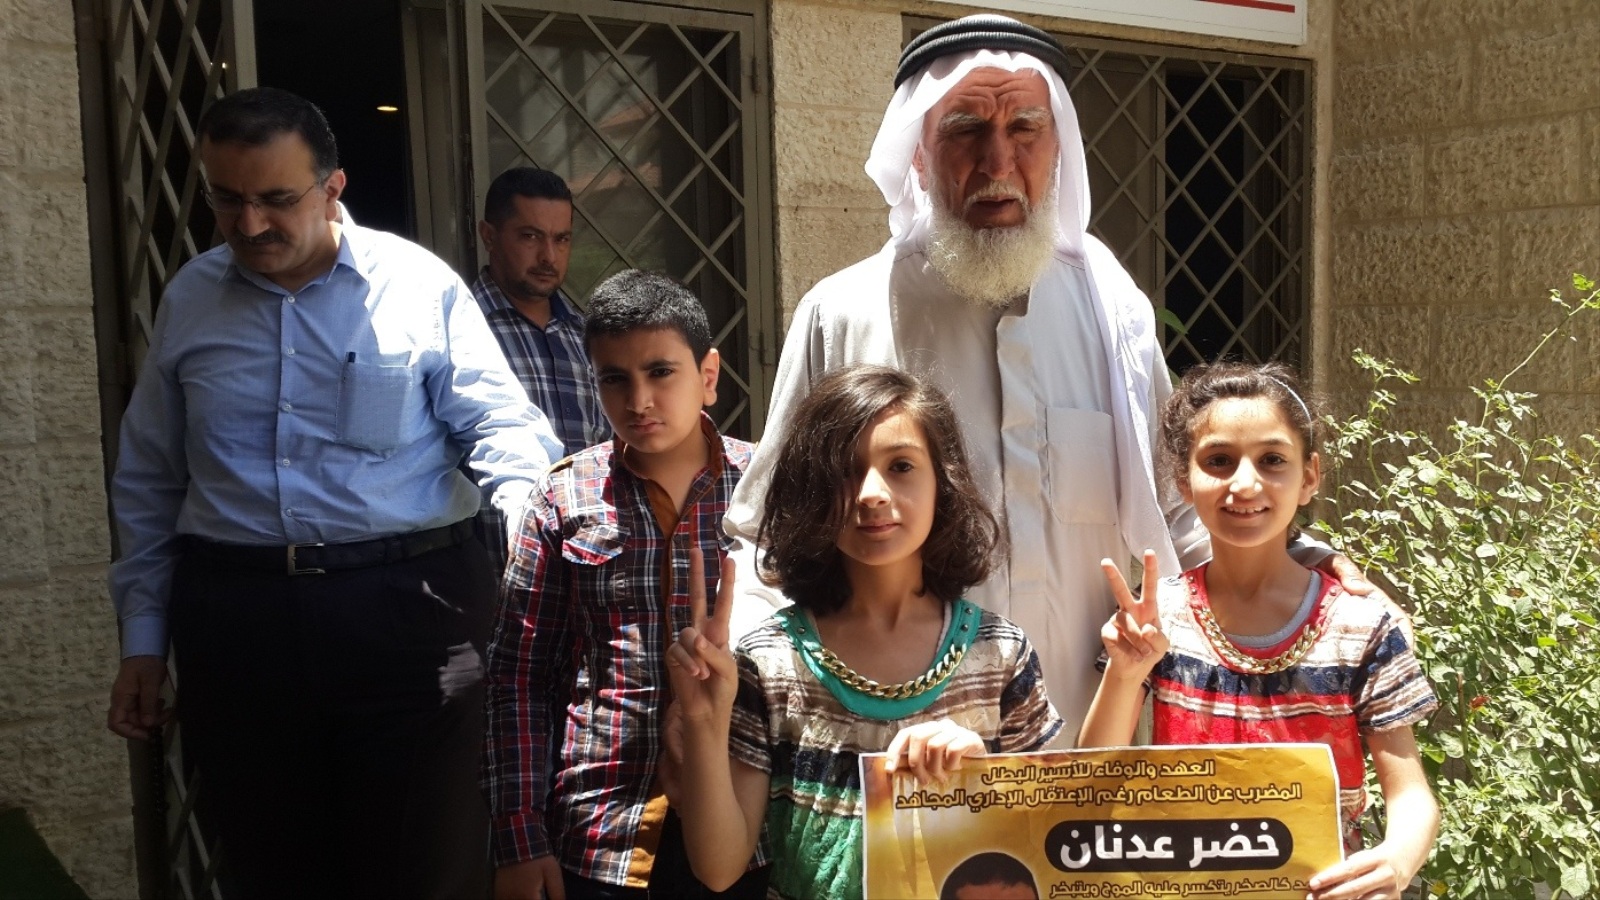 والد المعتقل عدنان وعائلته يحتفلون بقرب الإفراج عنه (الجزيرة)